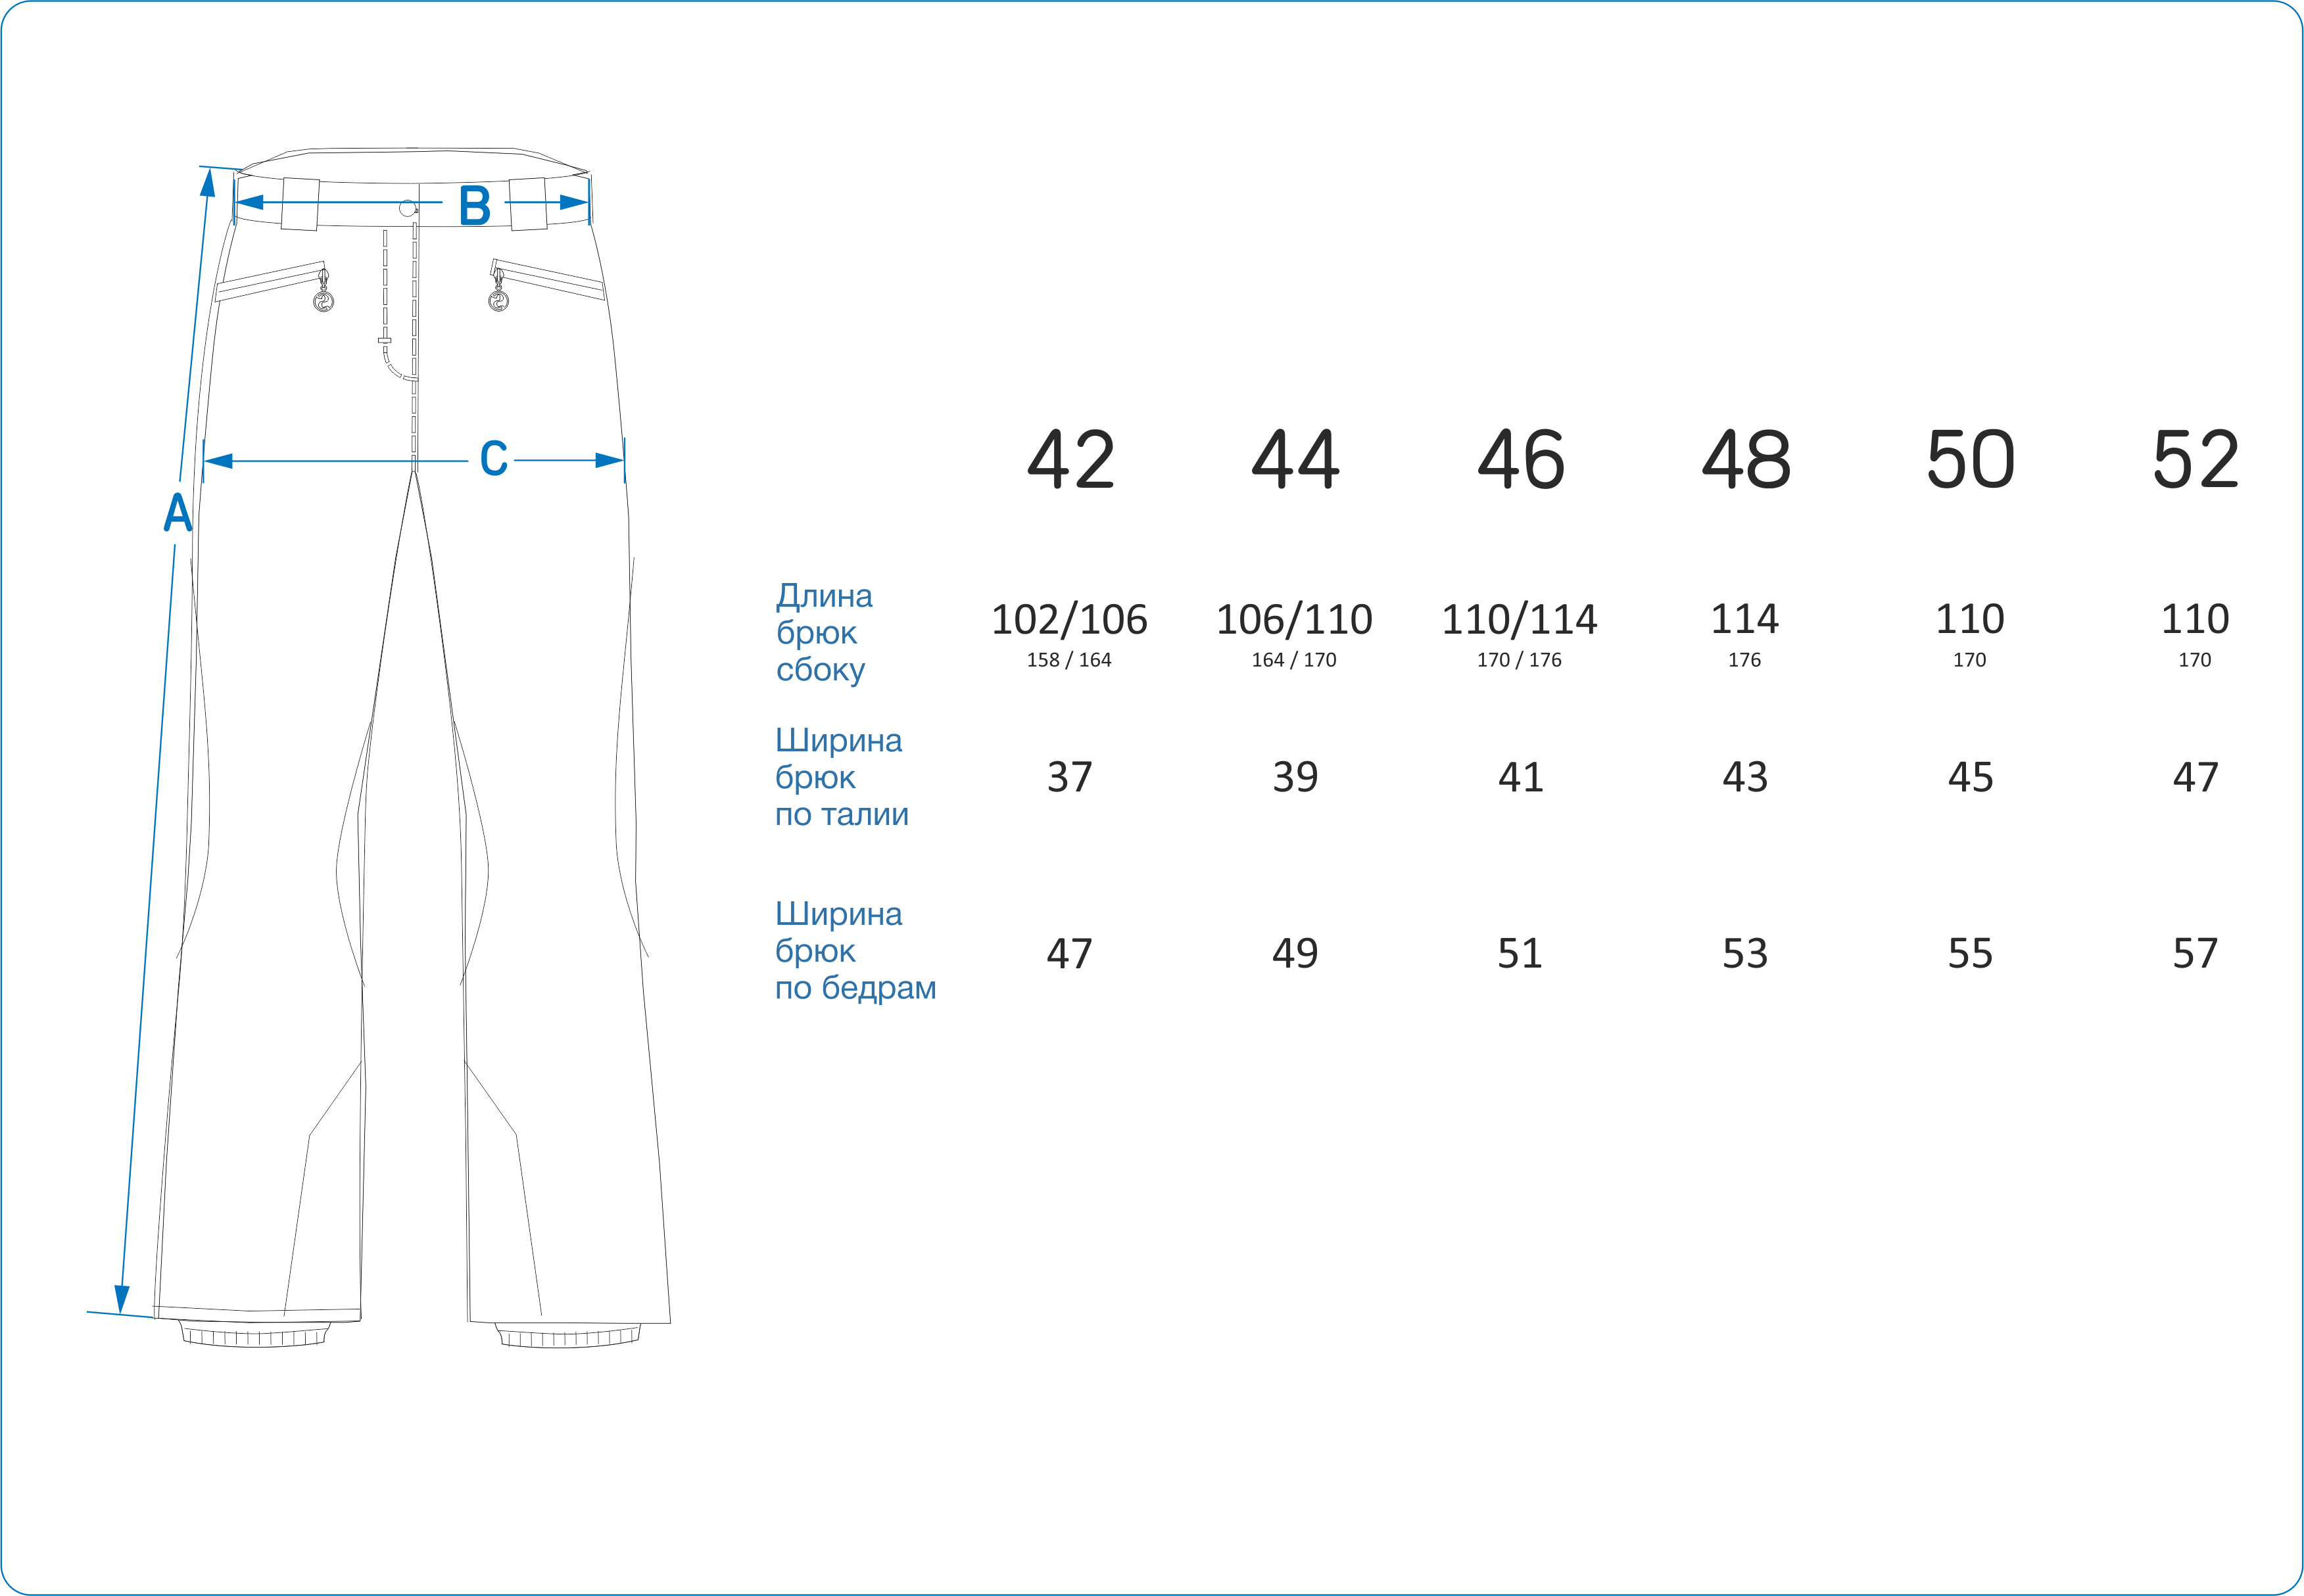 Размер брюки 44 объемы. 170 Российский размер штанов. Российский размер 44 мужской штаны. 44 Российский размер брюк. Размер классических брюк мужских